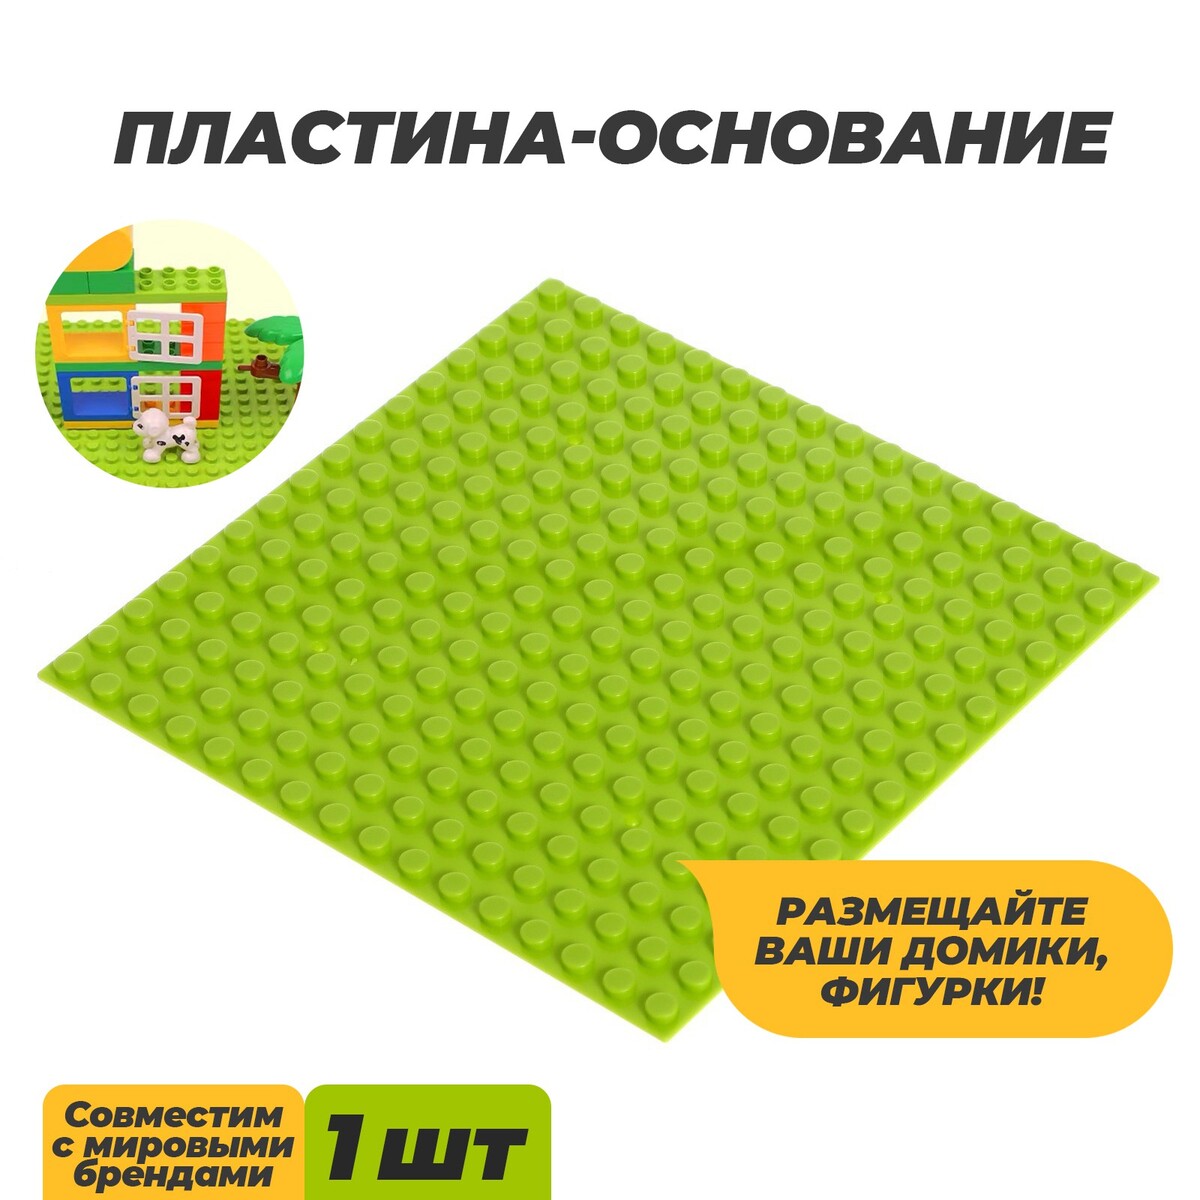 Пластина-основание для конструктора, 12,8 × 12,8 см, цвет салатовый пластина нижняя для велочехла scicon aero сomfort sp053105003